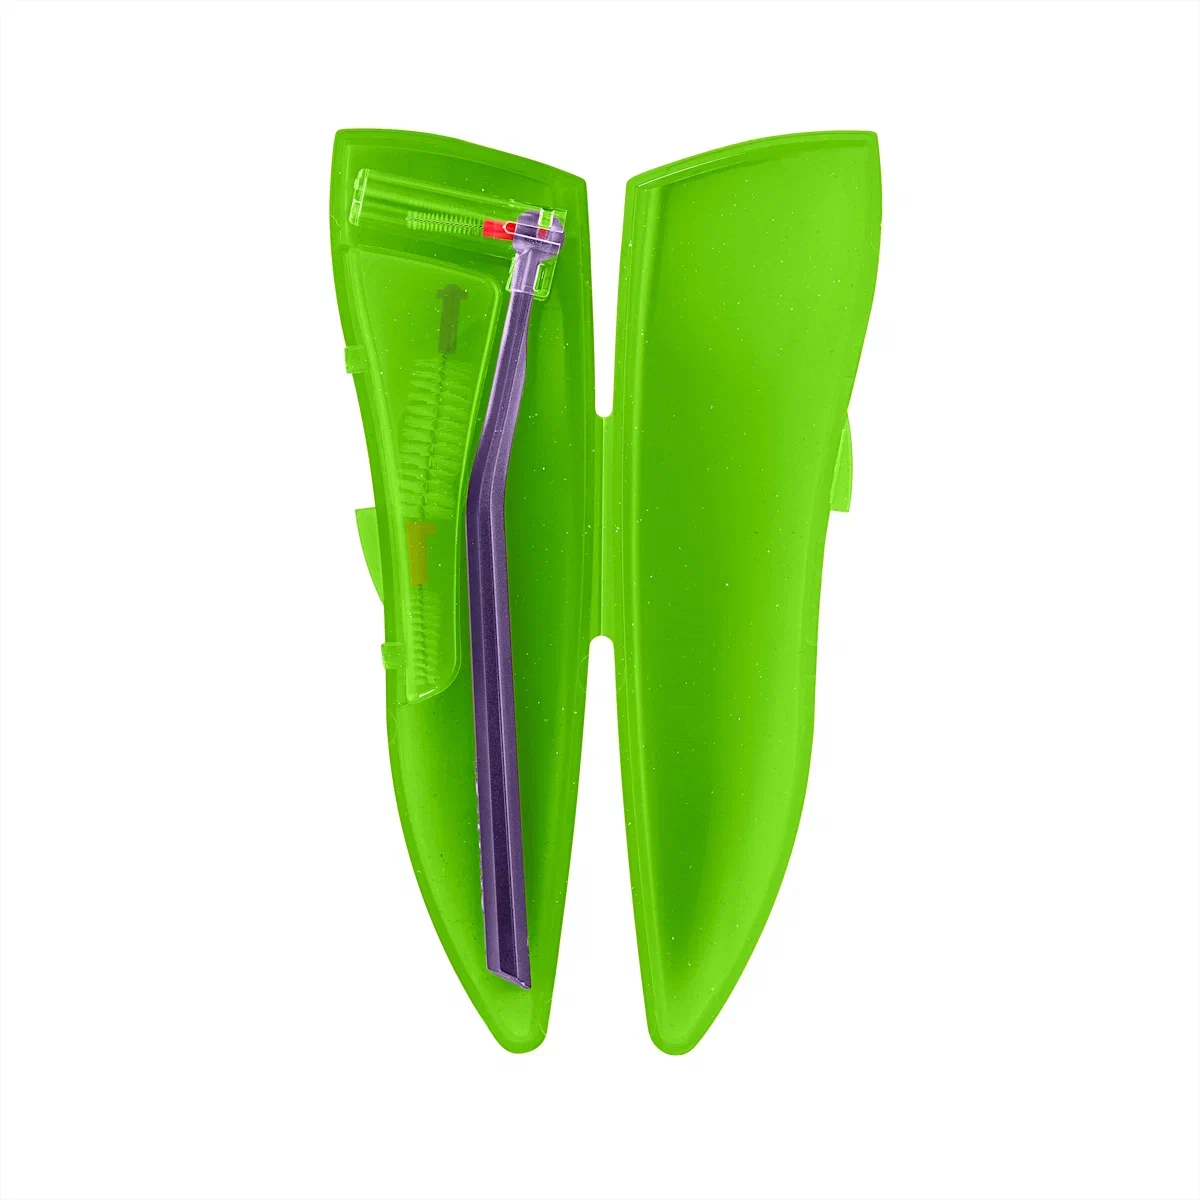 Набор для гигиенического ухода Curaprox ортодонтический, с держателем UHS470, зелёный curaprox набор для гигиенического ухода 5 ершиков cps 06 011 с держателем uhs409 и uhs470 1